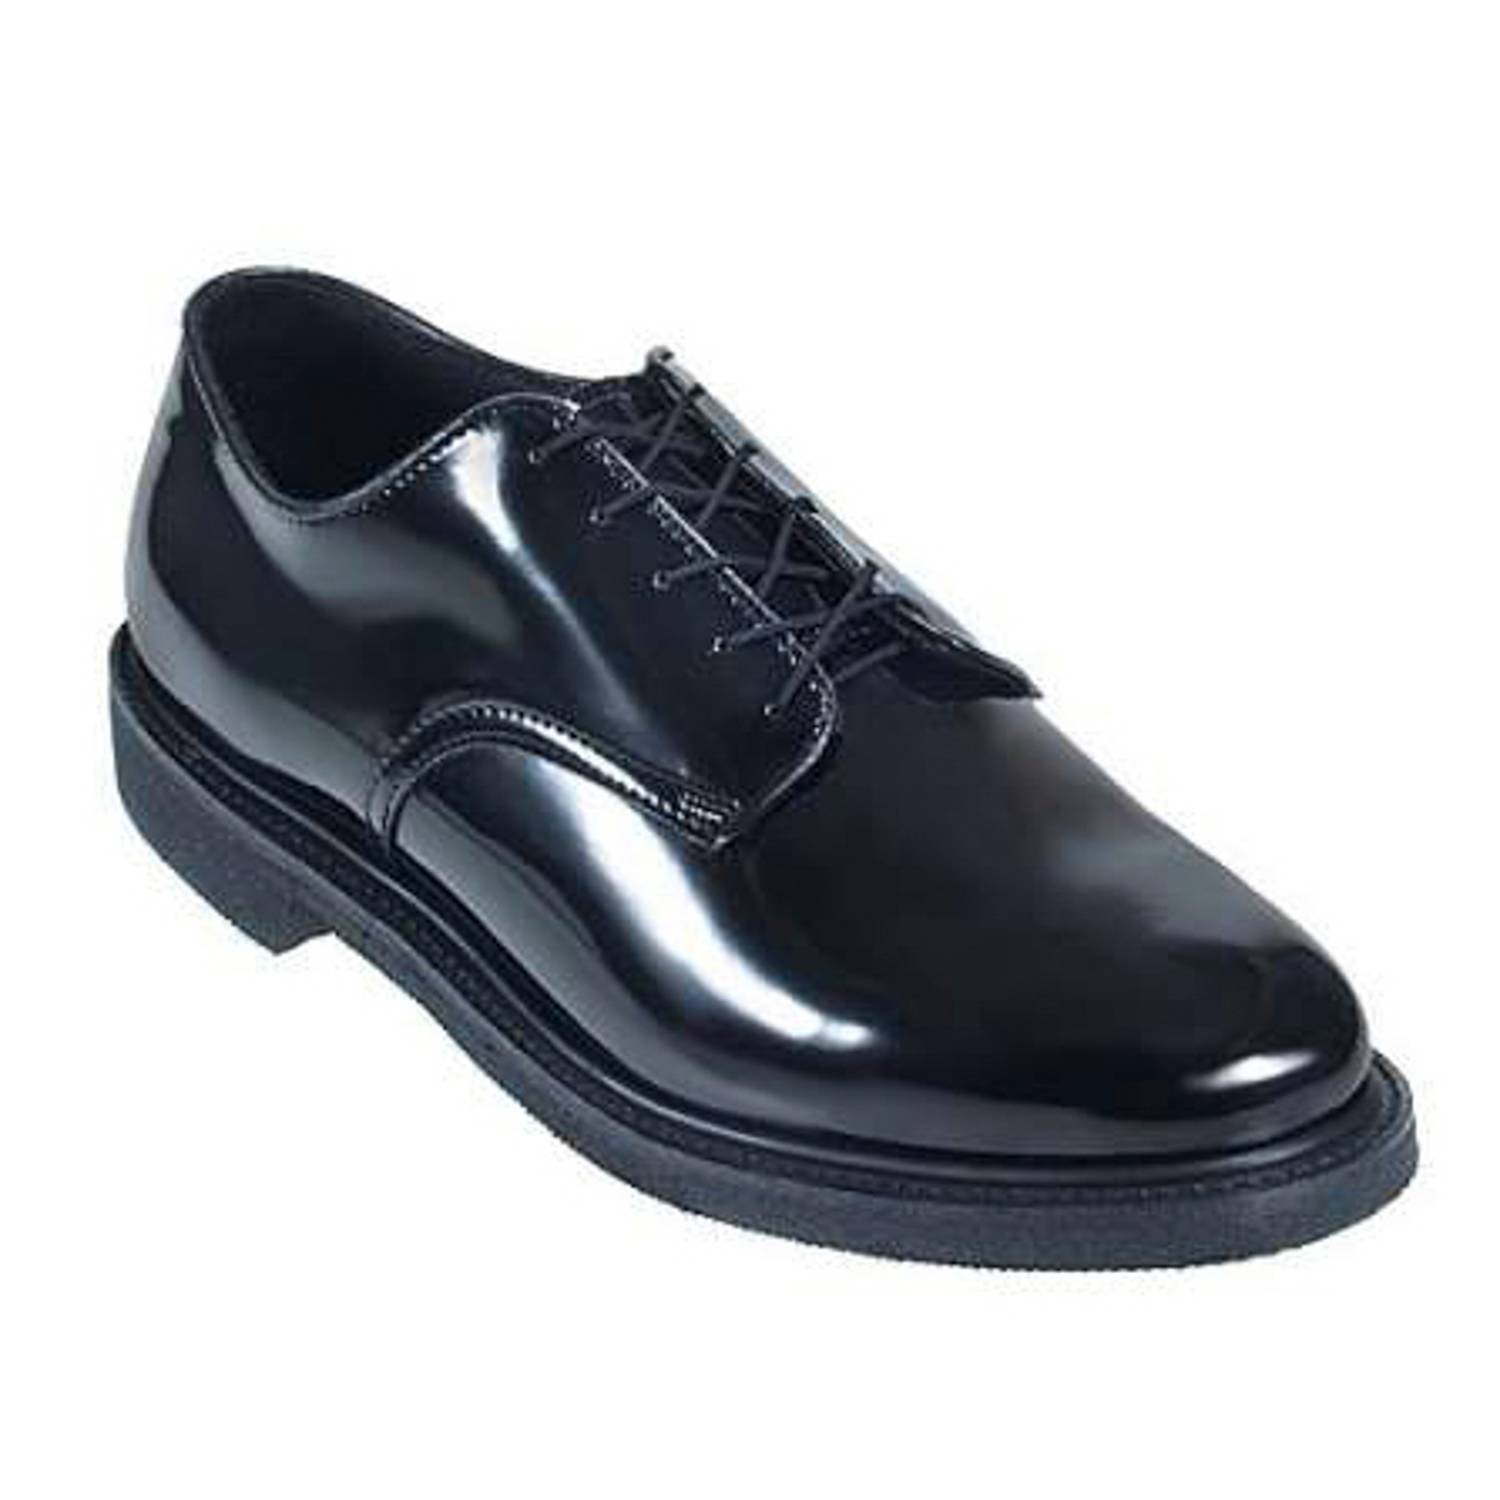 oxford uniform shoes